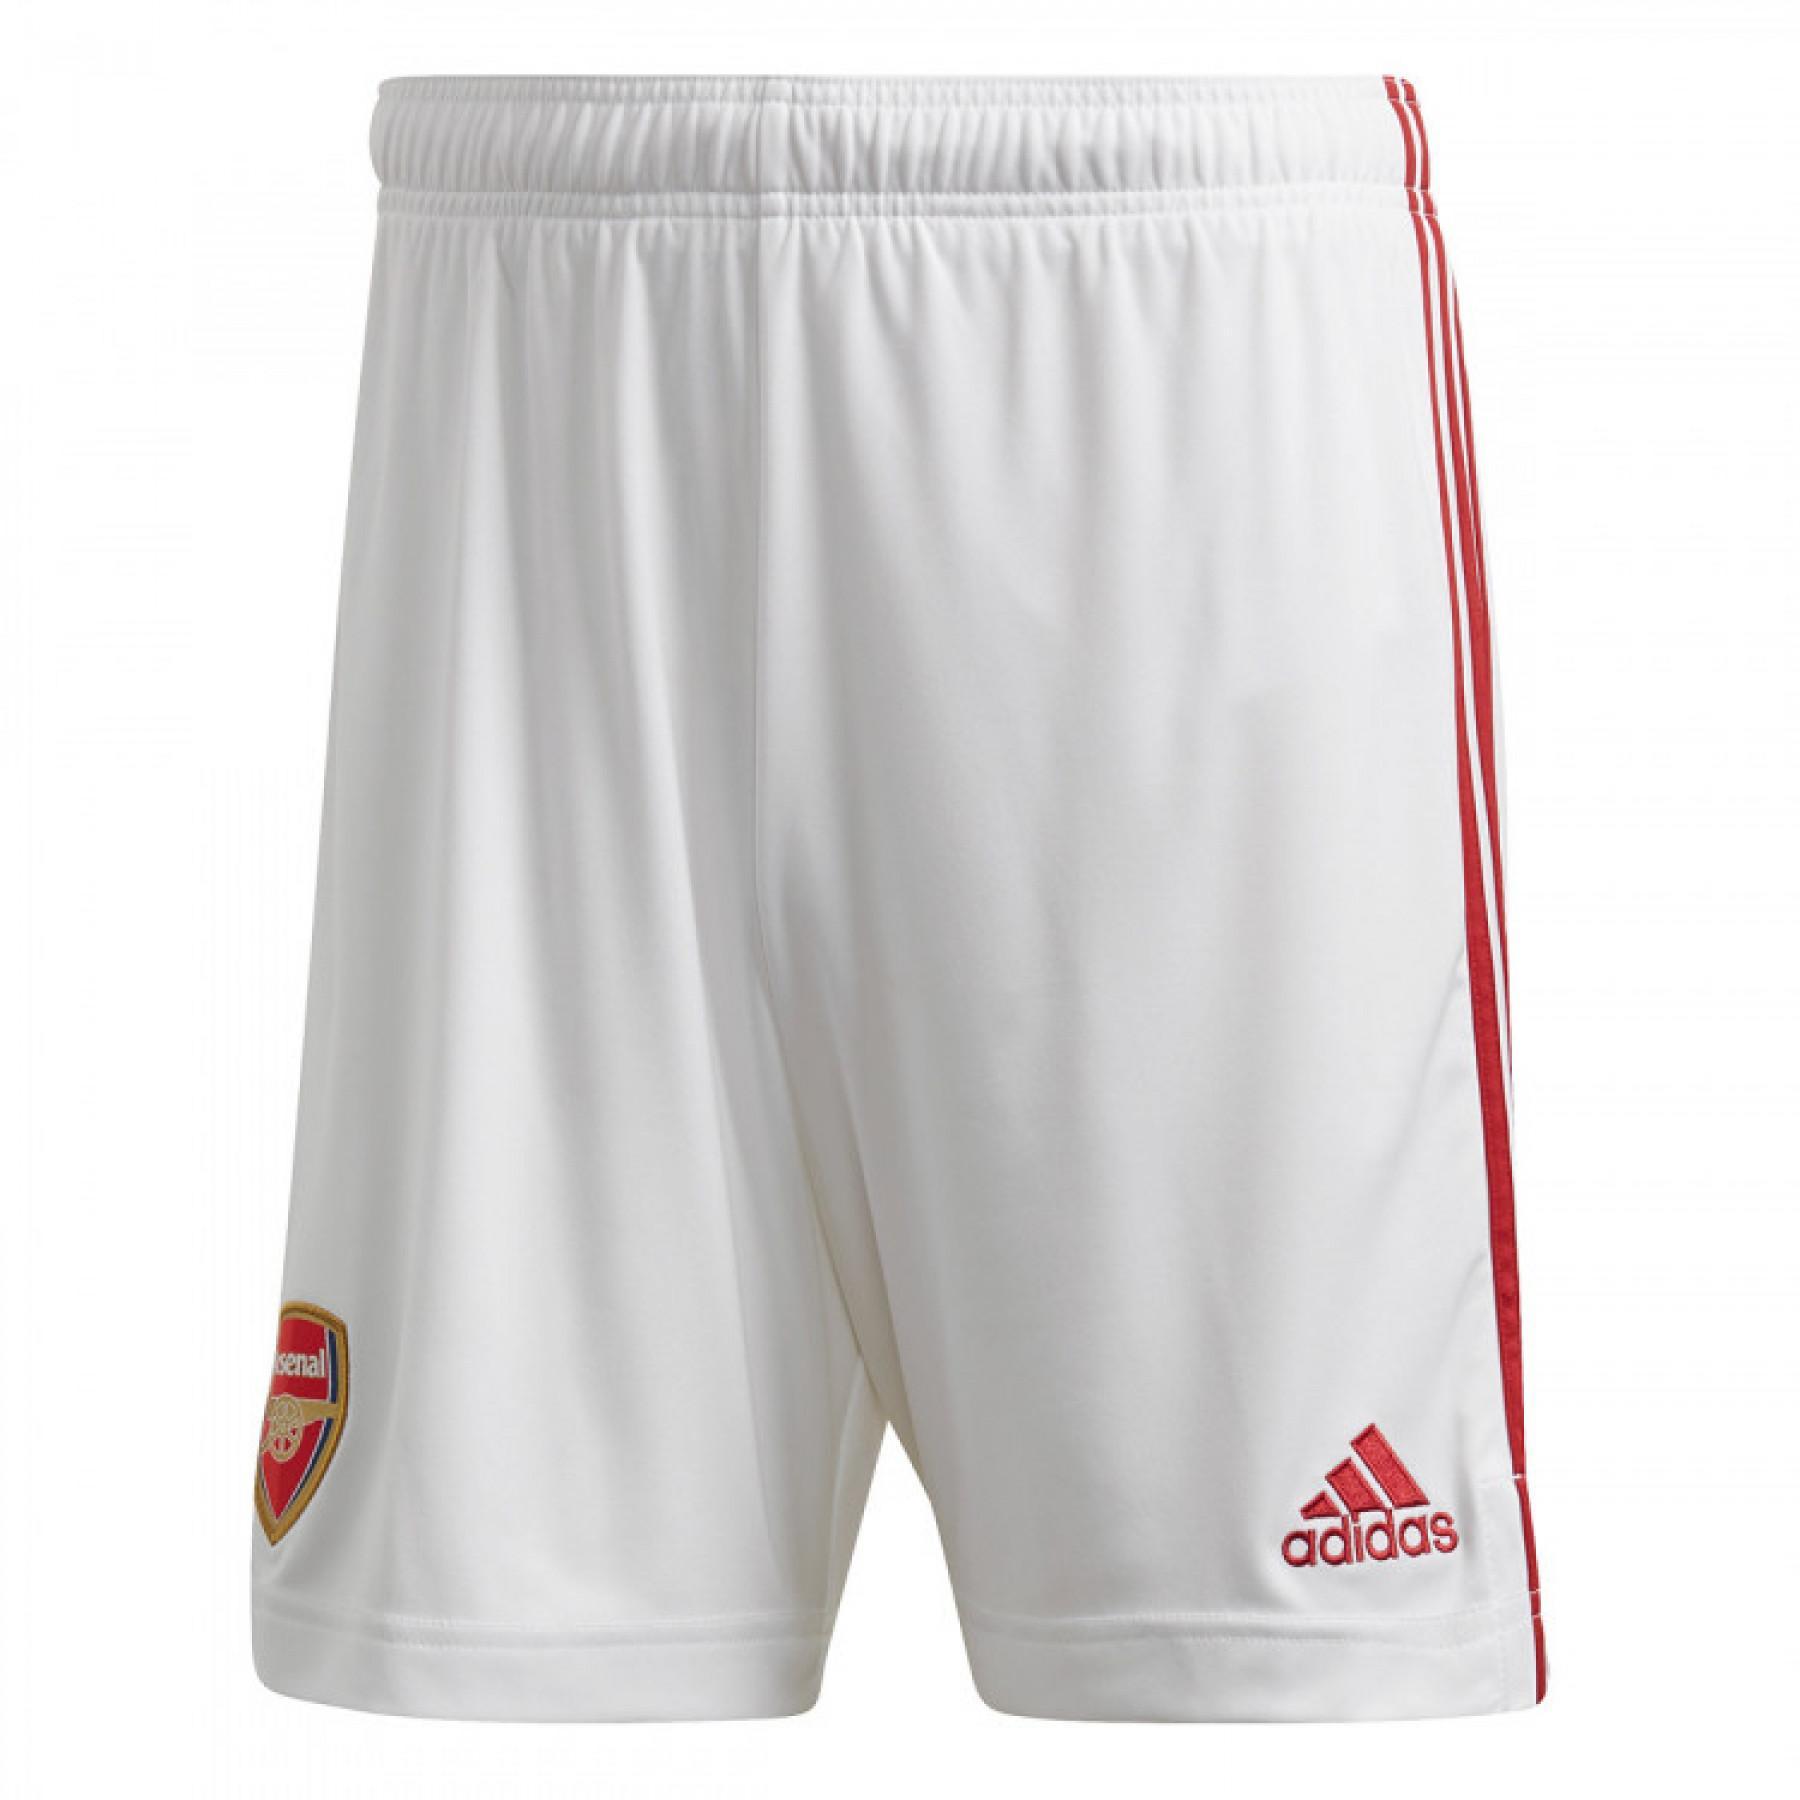 Home shorts Arsenal 2020/21